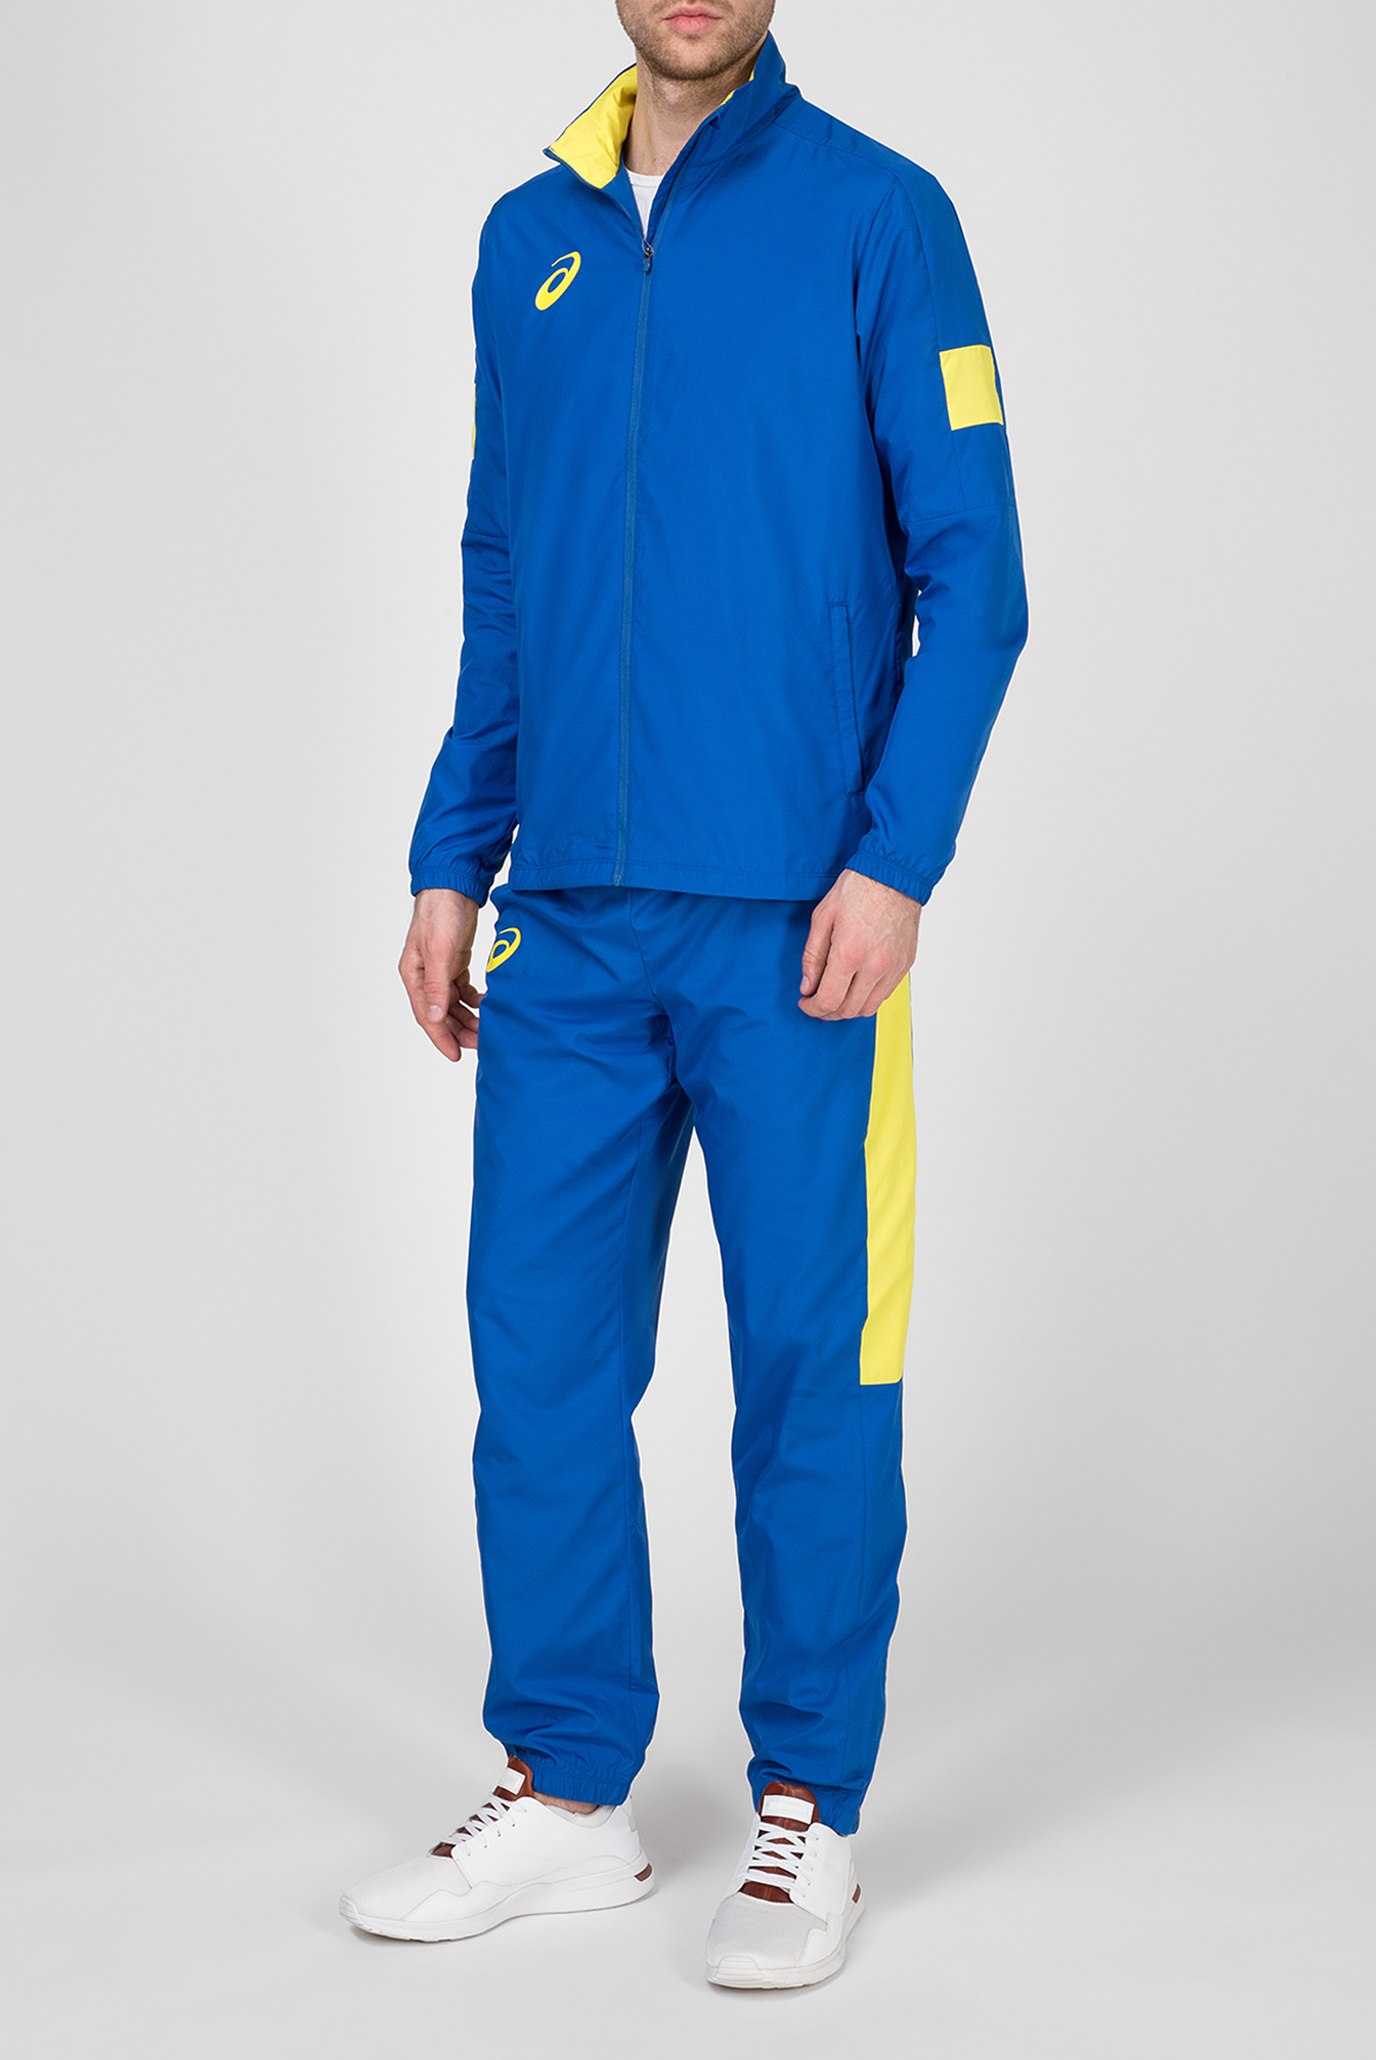 Мужской синий спортивный костюм (ветровка, брюки) 1